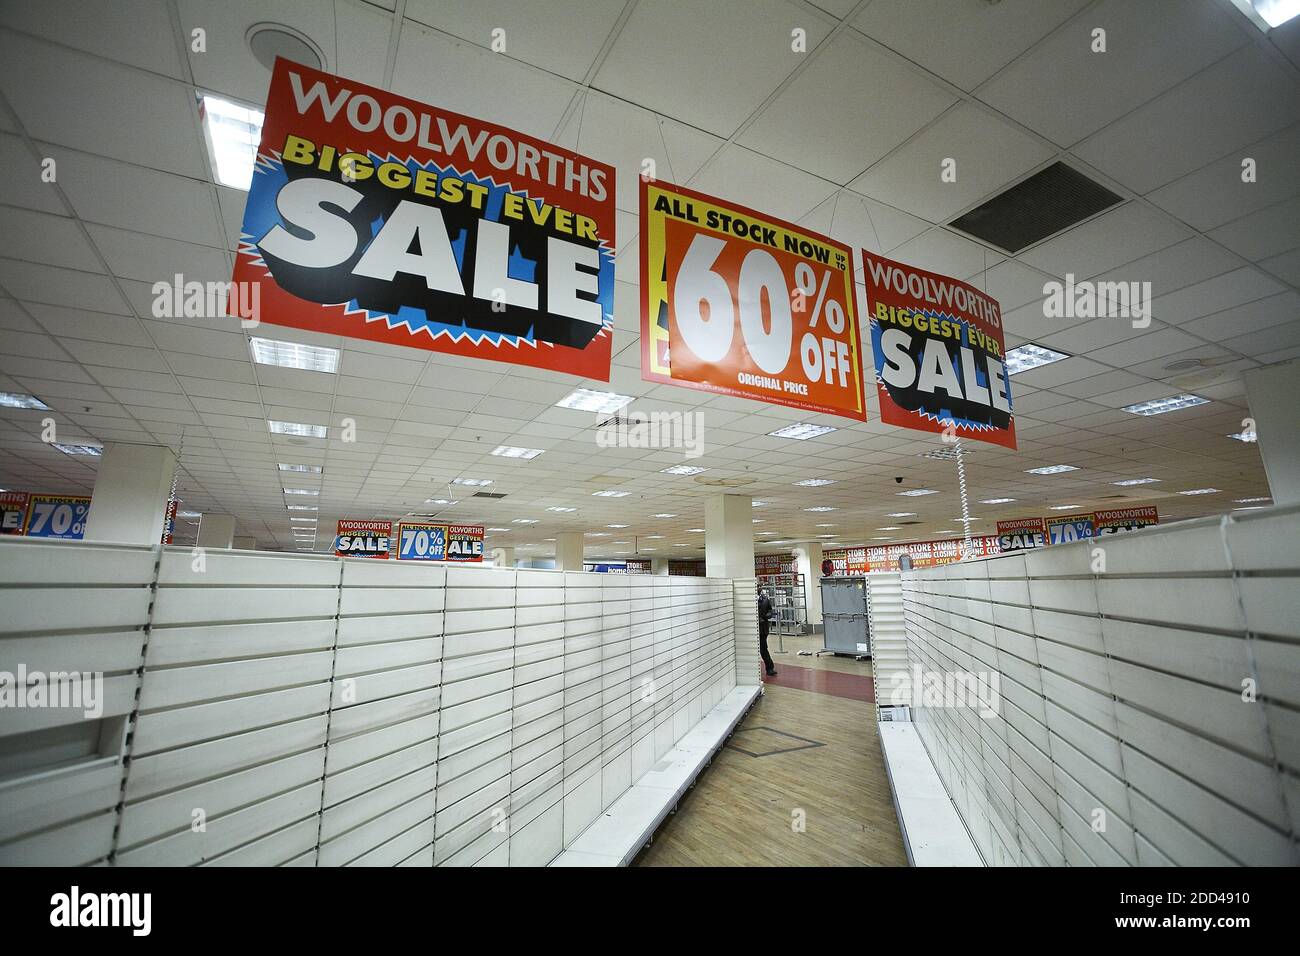 GRAN BRETAGNA / Inghilterra / Londra /dopo anni di vendite in difficoltà, i negozi di Woolworths finalmente crollarono in amministrazione. Foto Stock